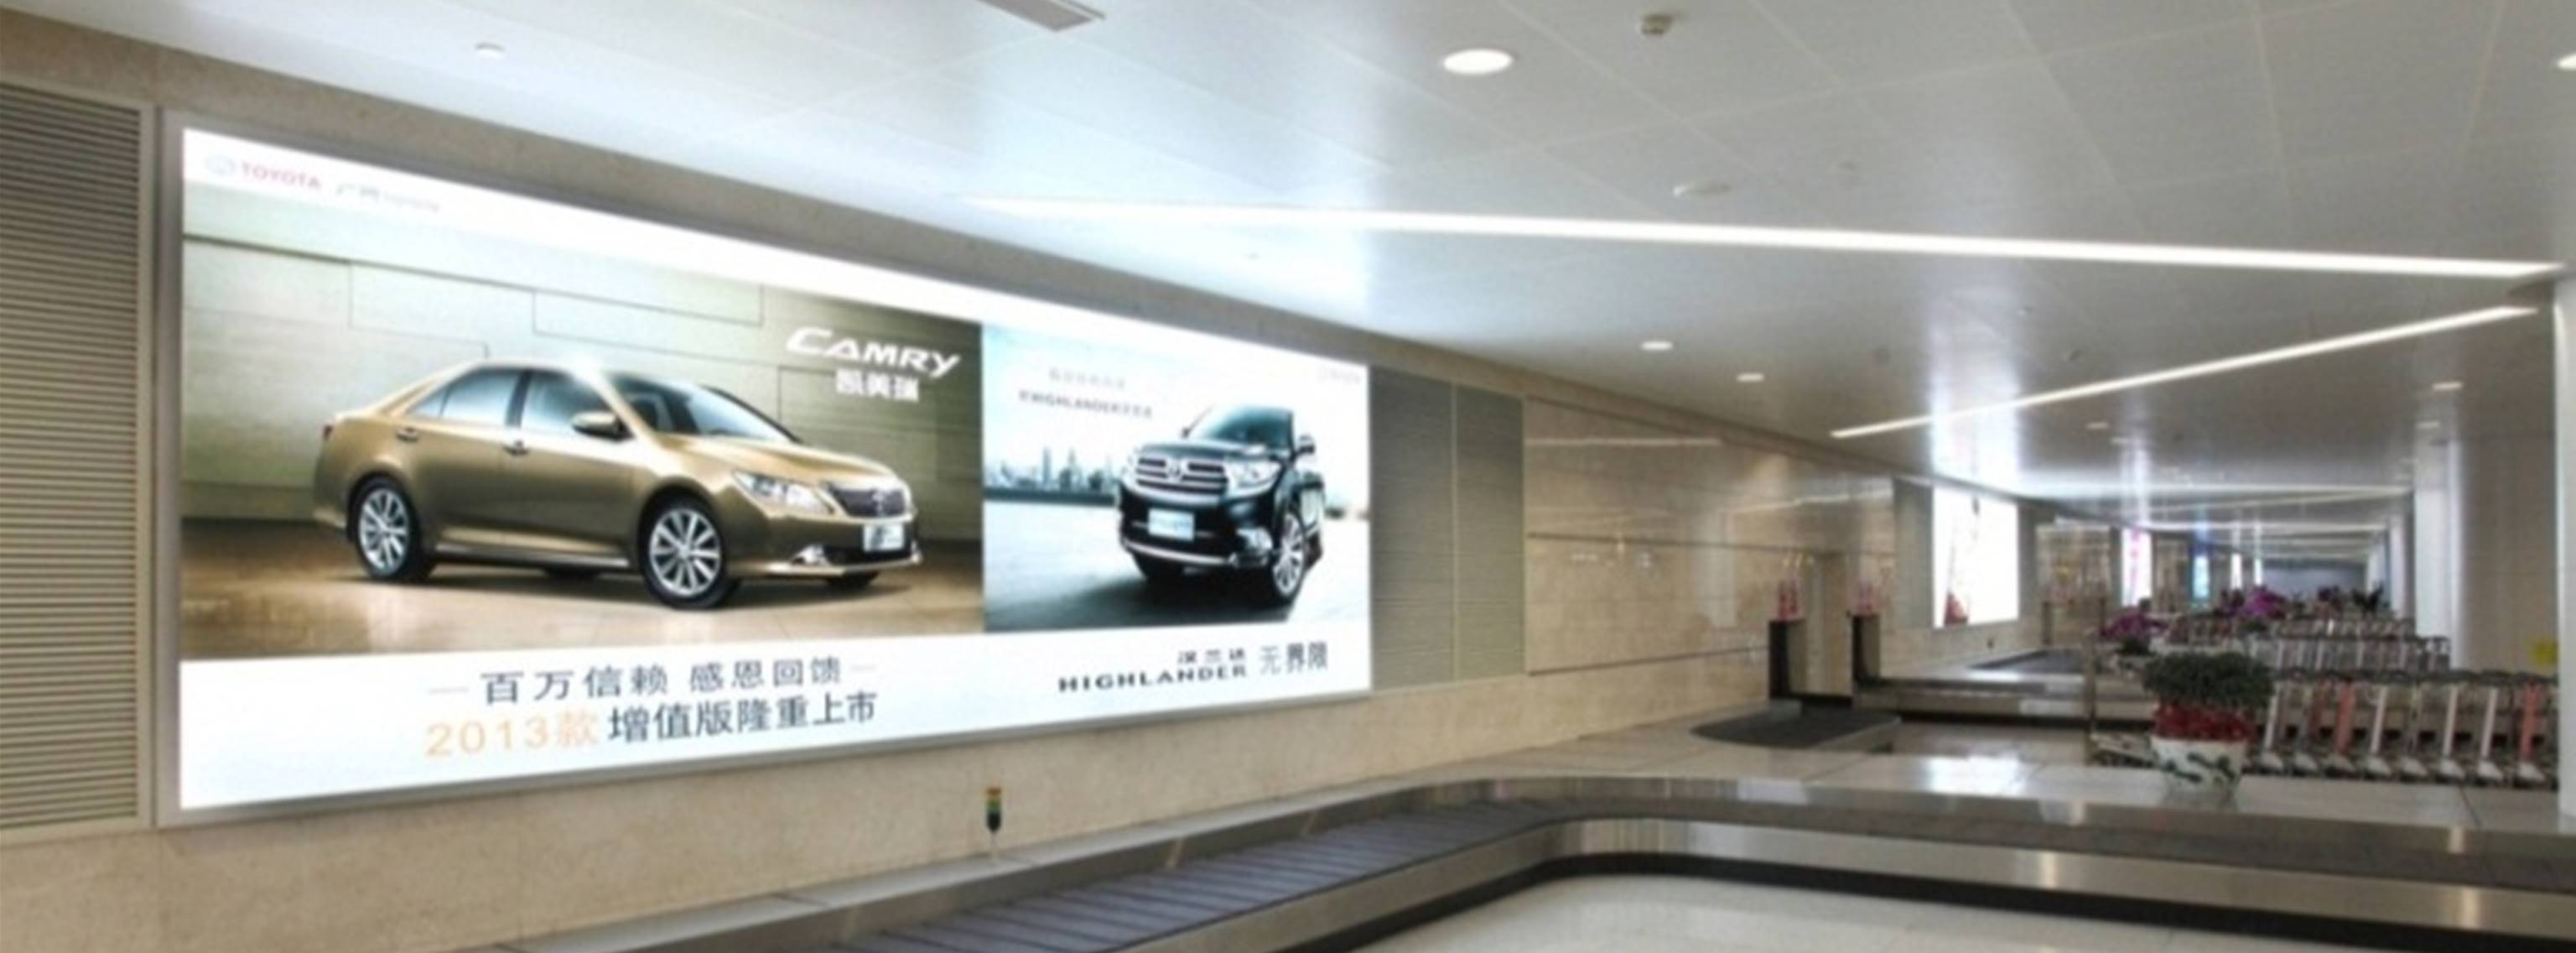 杭州萧山机场广告-T3行李转盘灯箱DB79